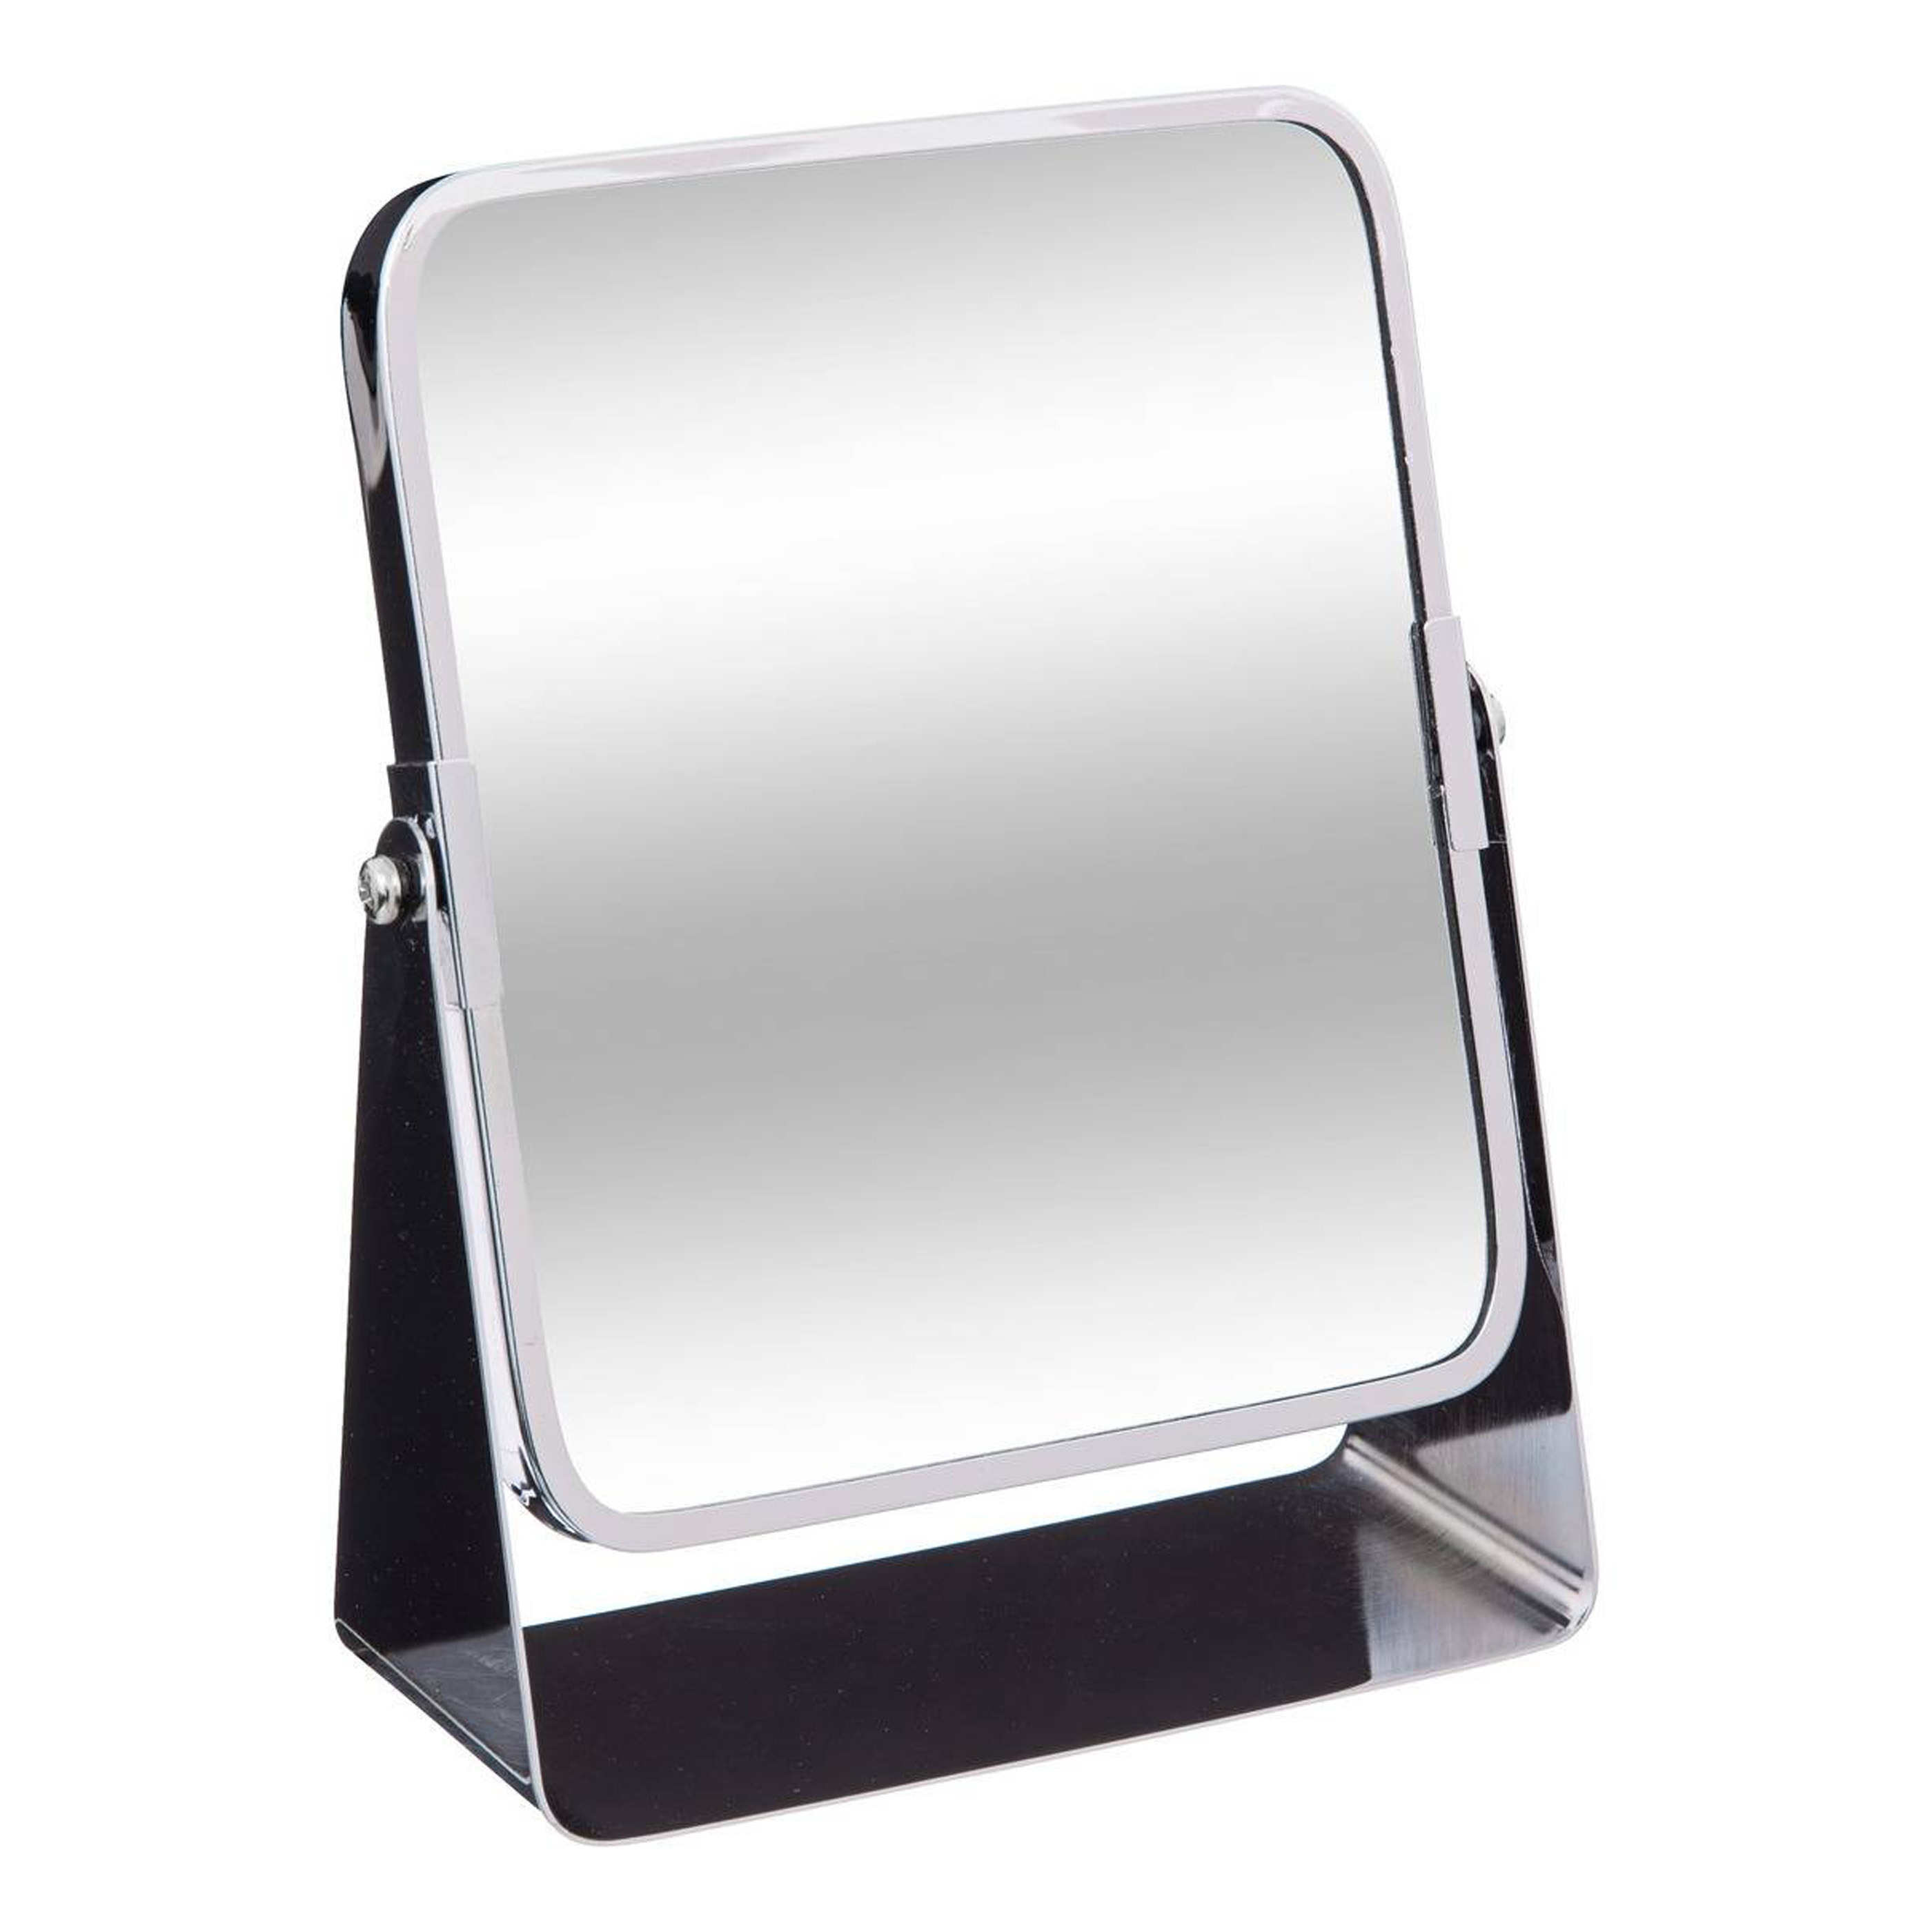 5five Make-up spiegel - 3x zoom - metaal - 7 x 20 cm - zilver - rechthoek - dubbelzijdig -